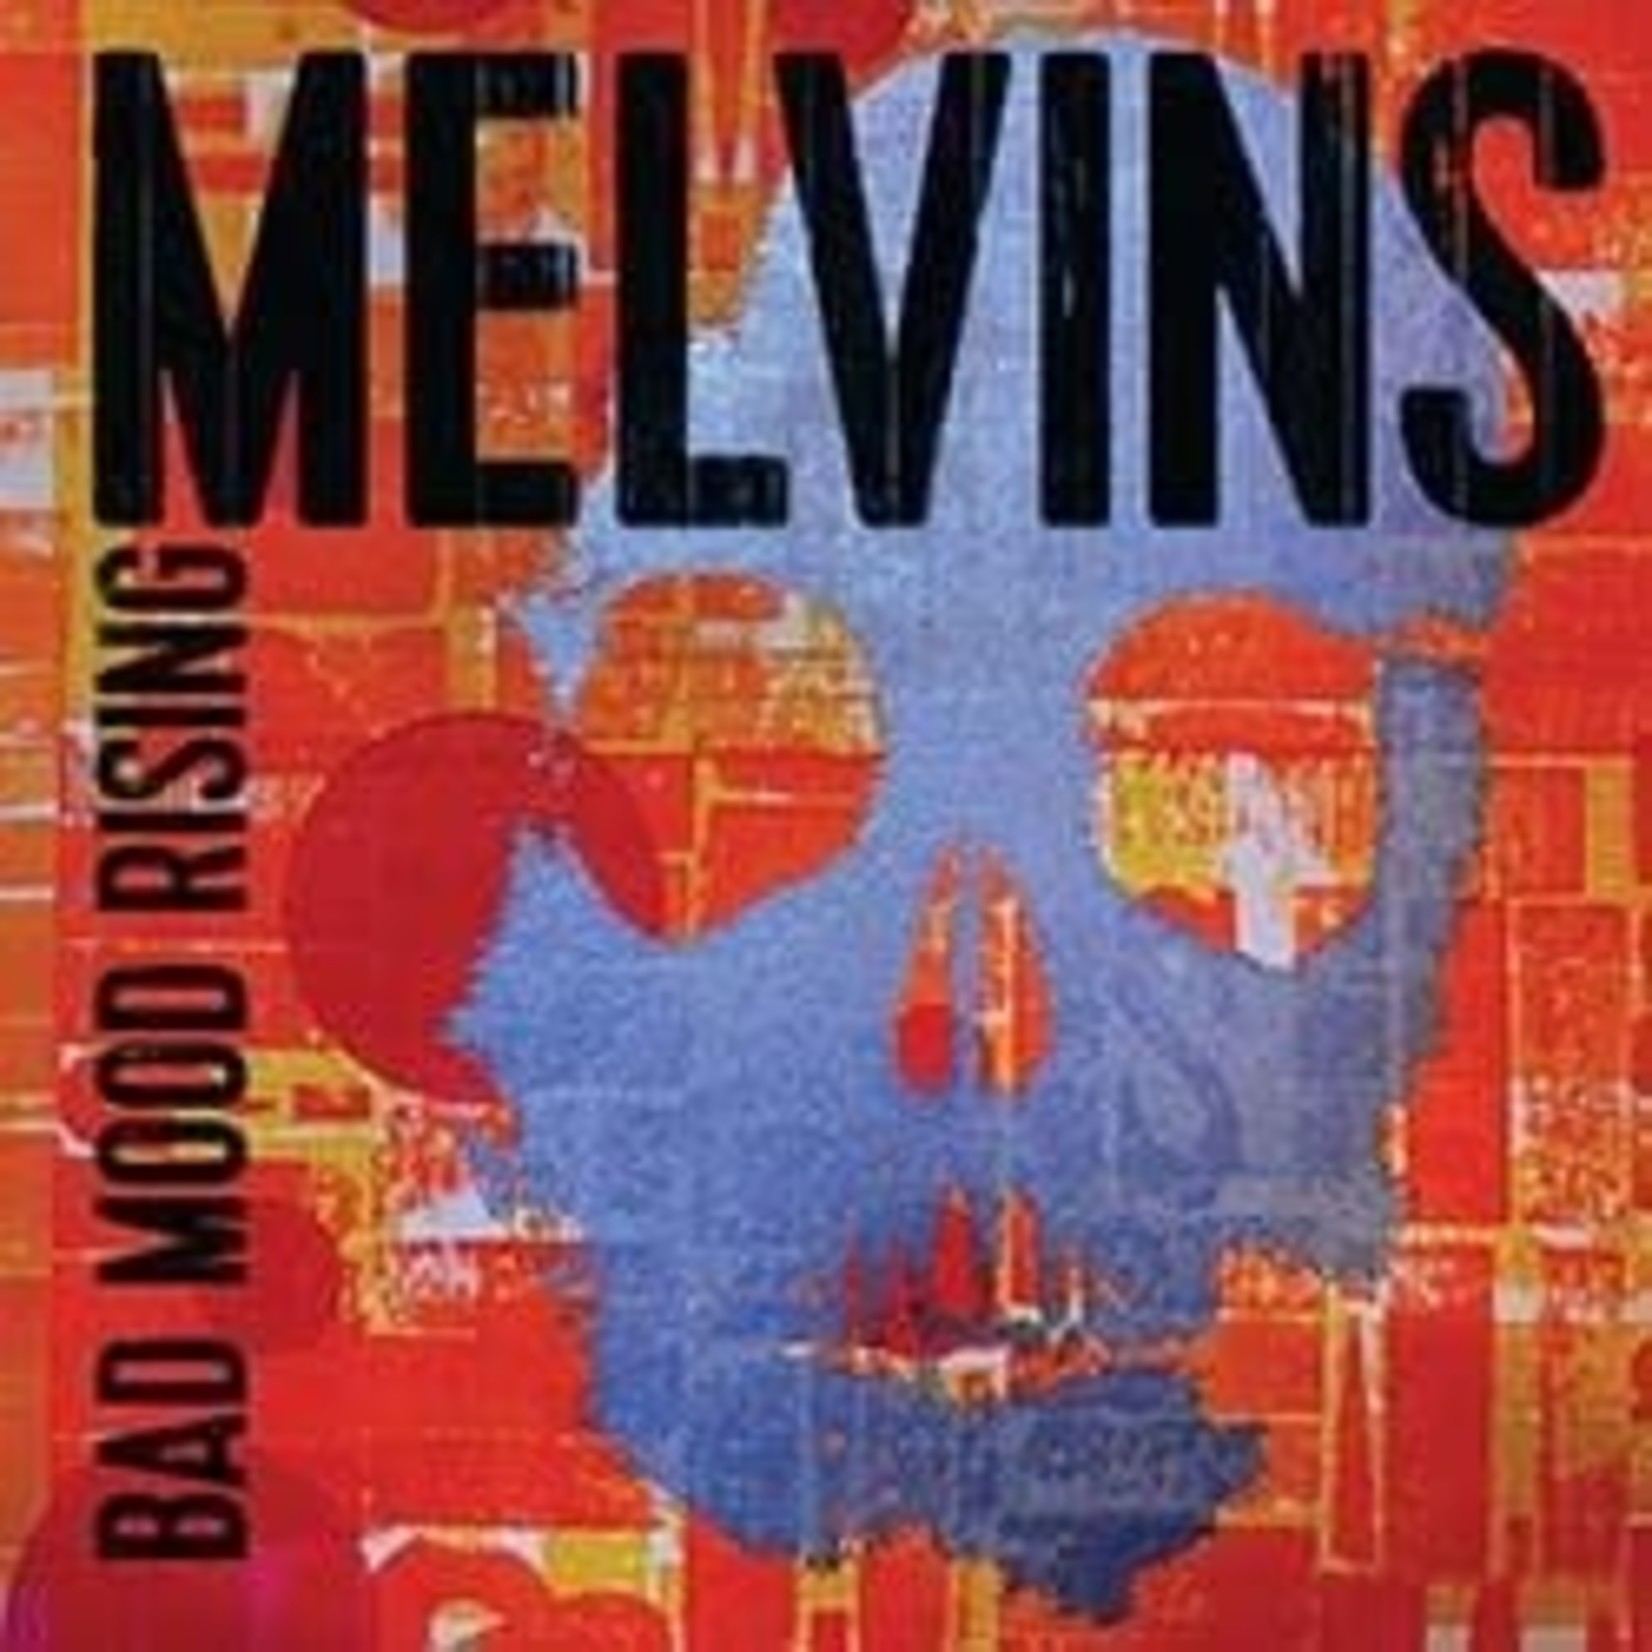 [New] Melvins - Bad Mood Rising